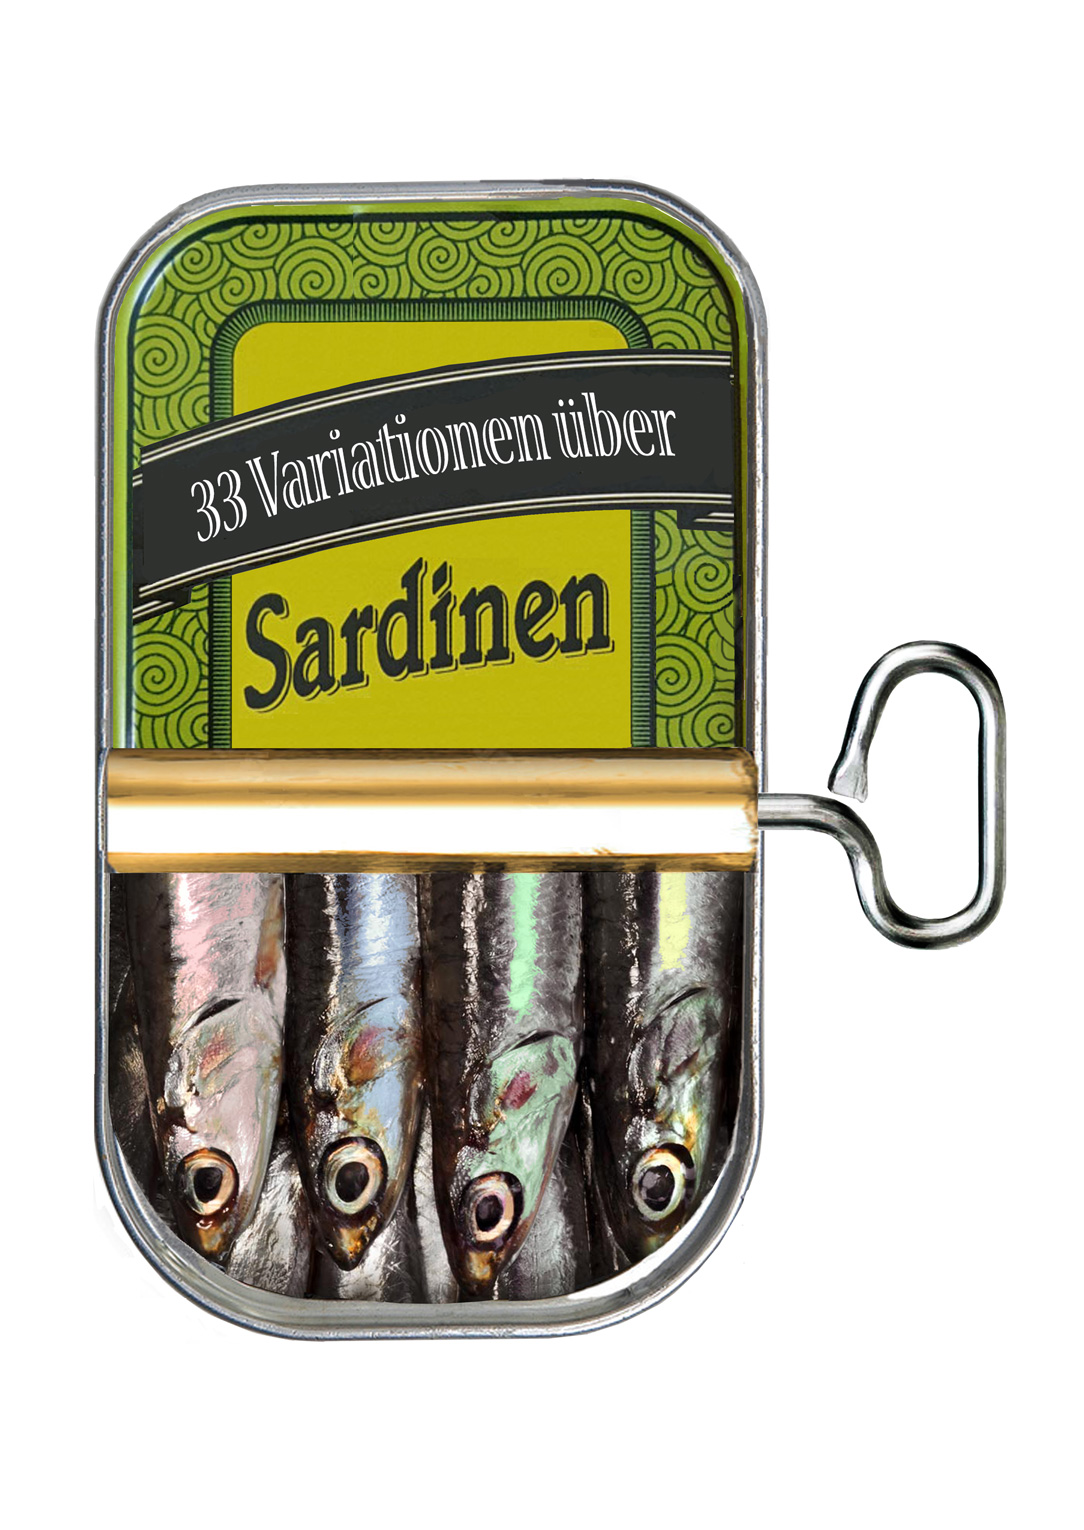 33 Variationen über Sardinen